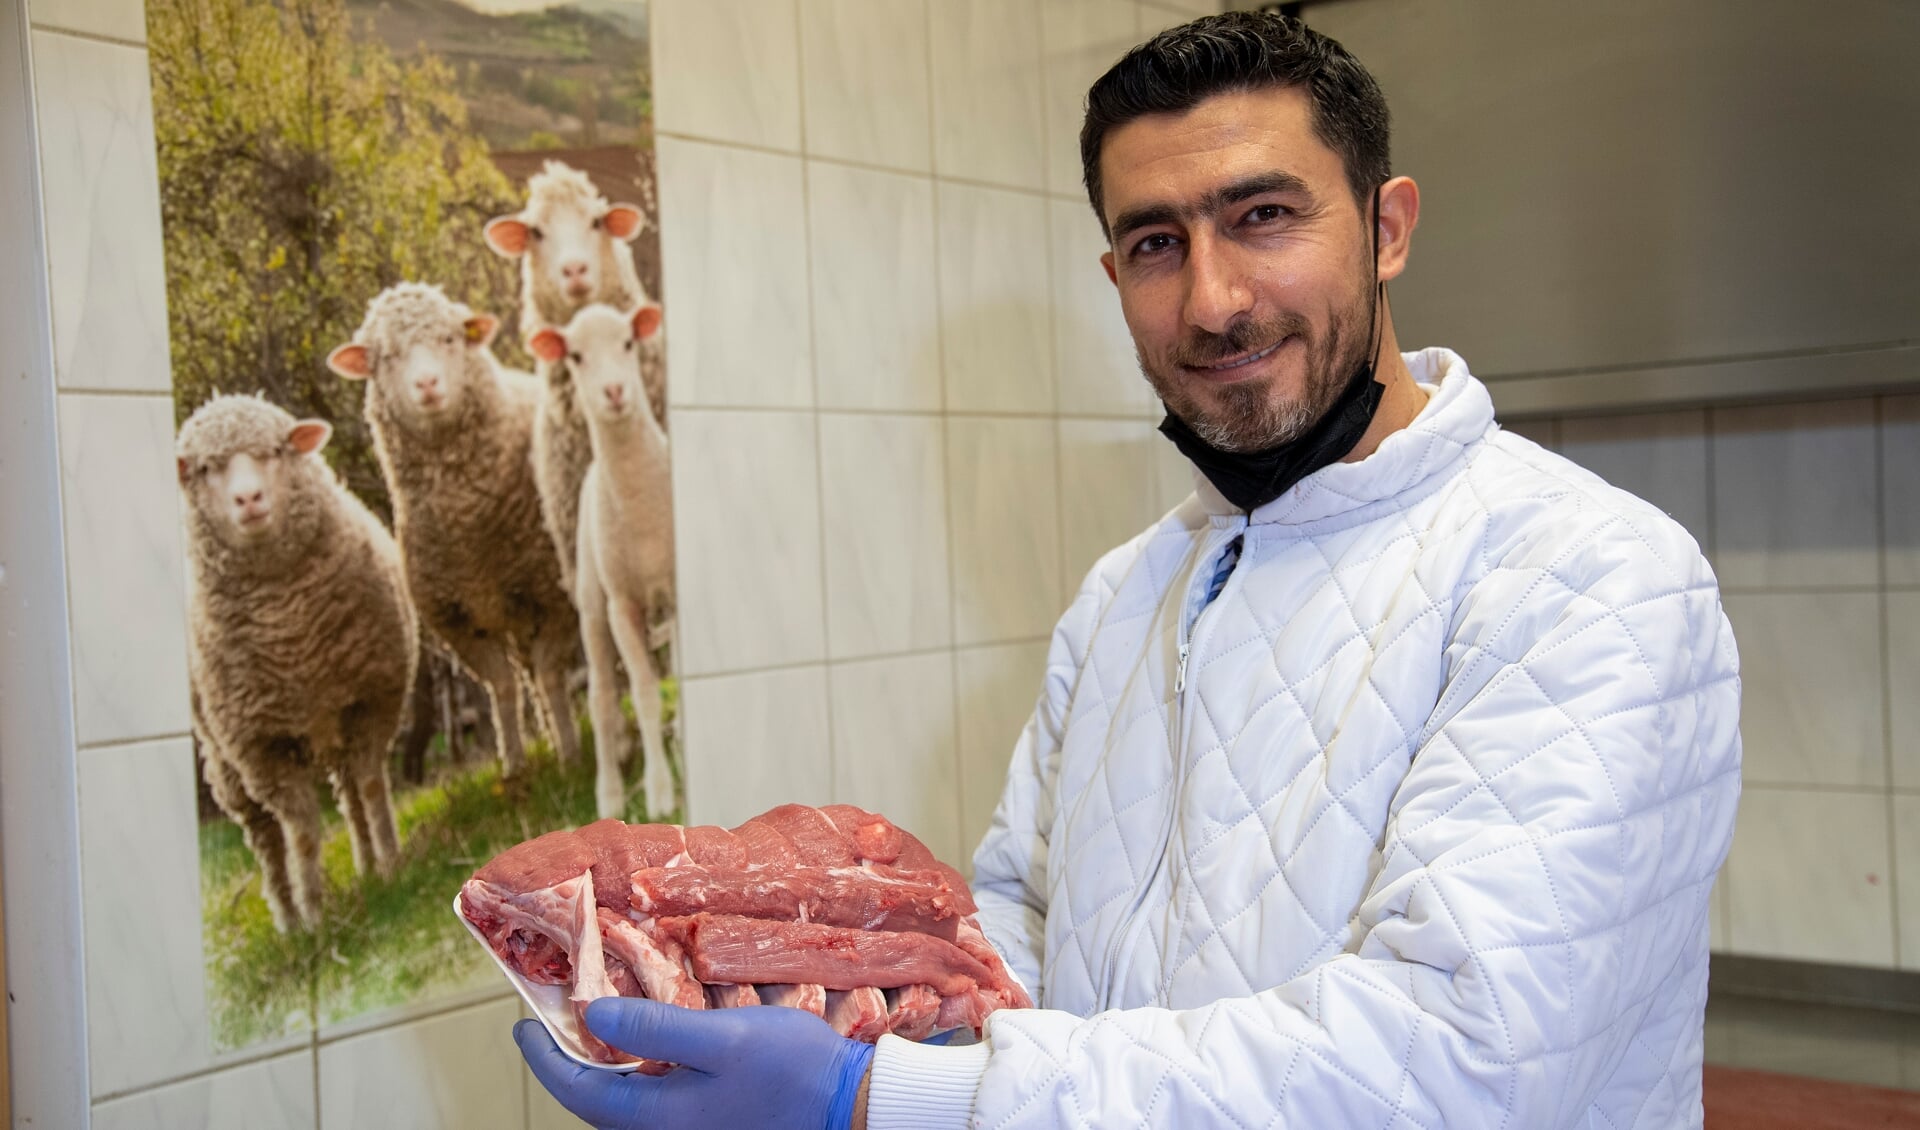 I slagterafdelingen i supermarkedet Al Noor, er Ahmad Al Saadi i fuld gang med at udskære kødet til de mange kunder, der hver dag kommer for at købe halal-kød.